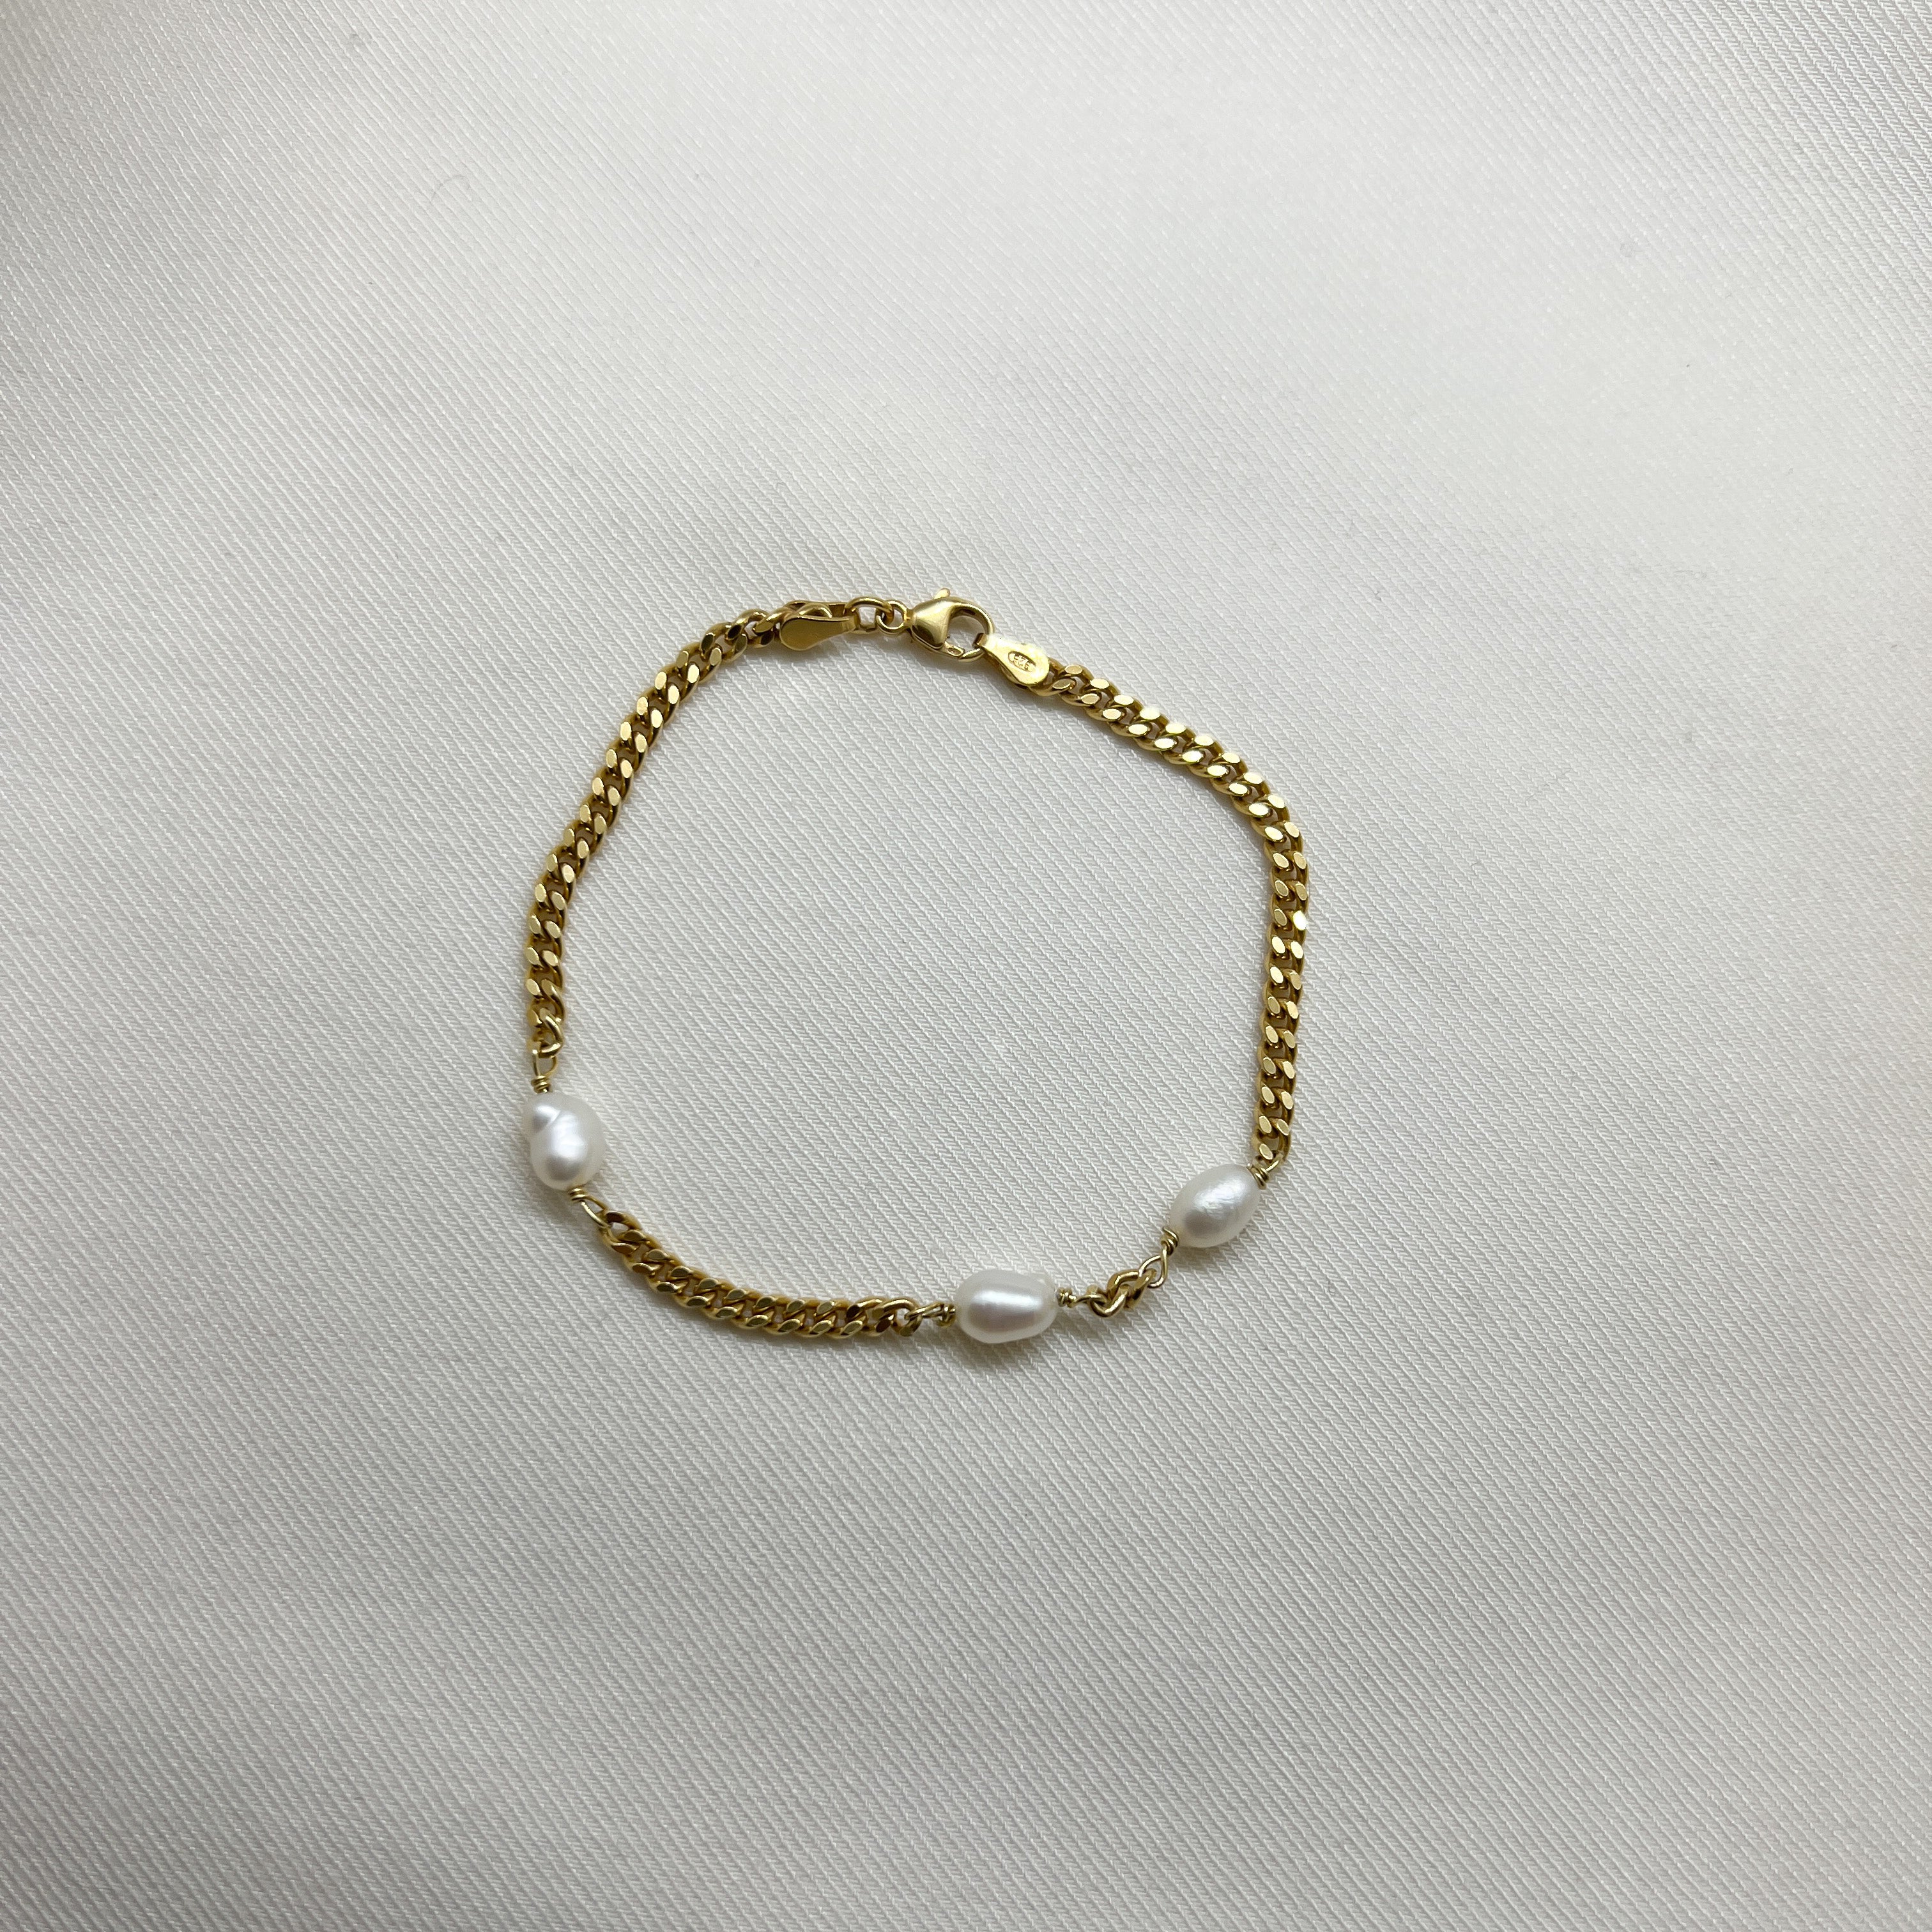 Rice pearl bracelet